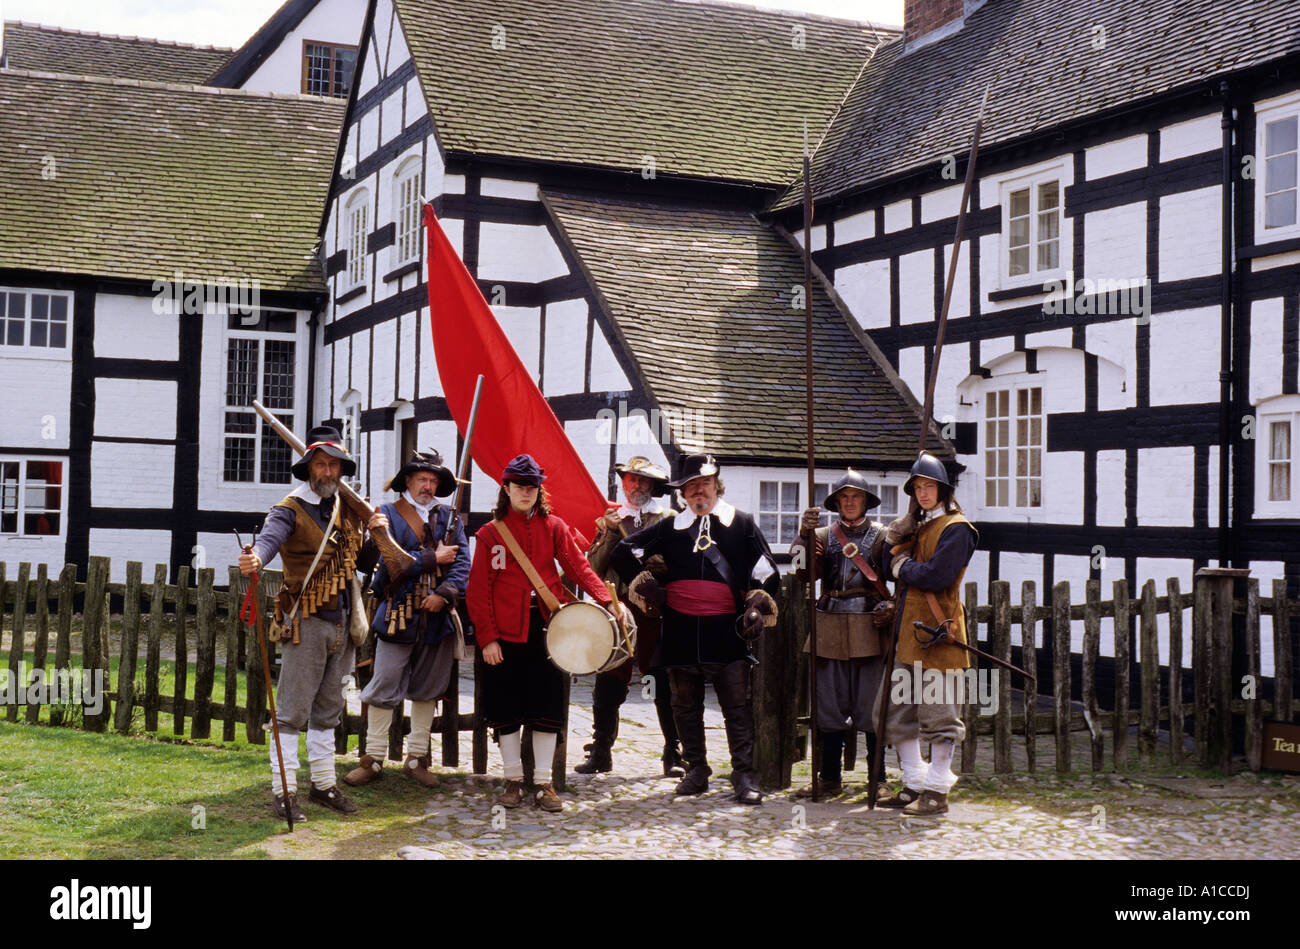 Volver promulgación de mediados del siglo XVII, período de la guerra civil inglesa Boscobel House Shropshire Foto de stock